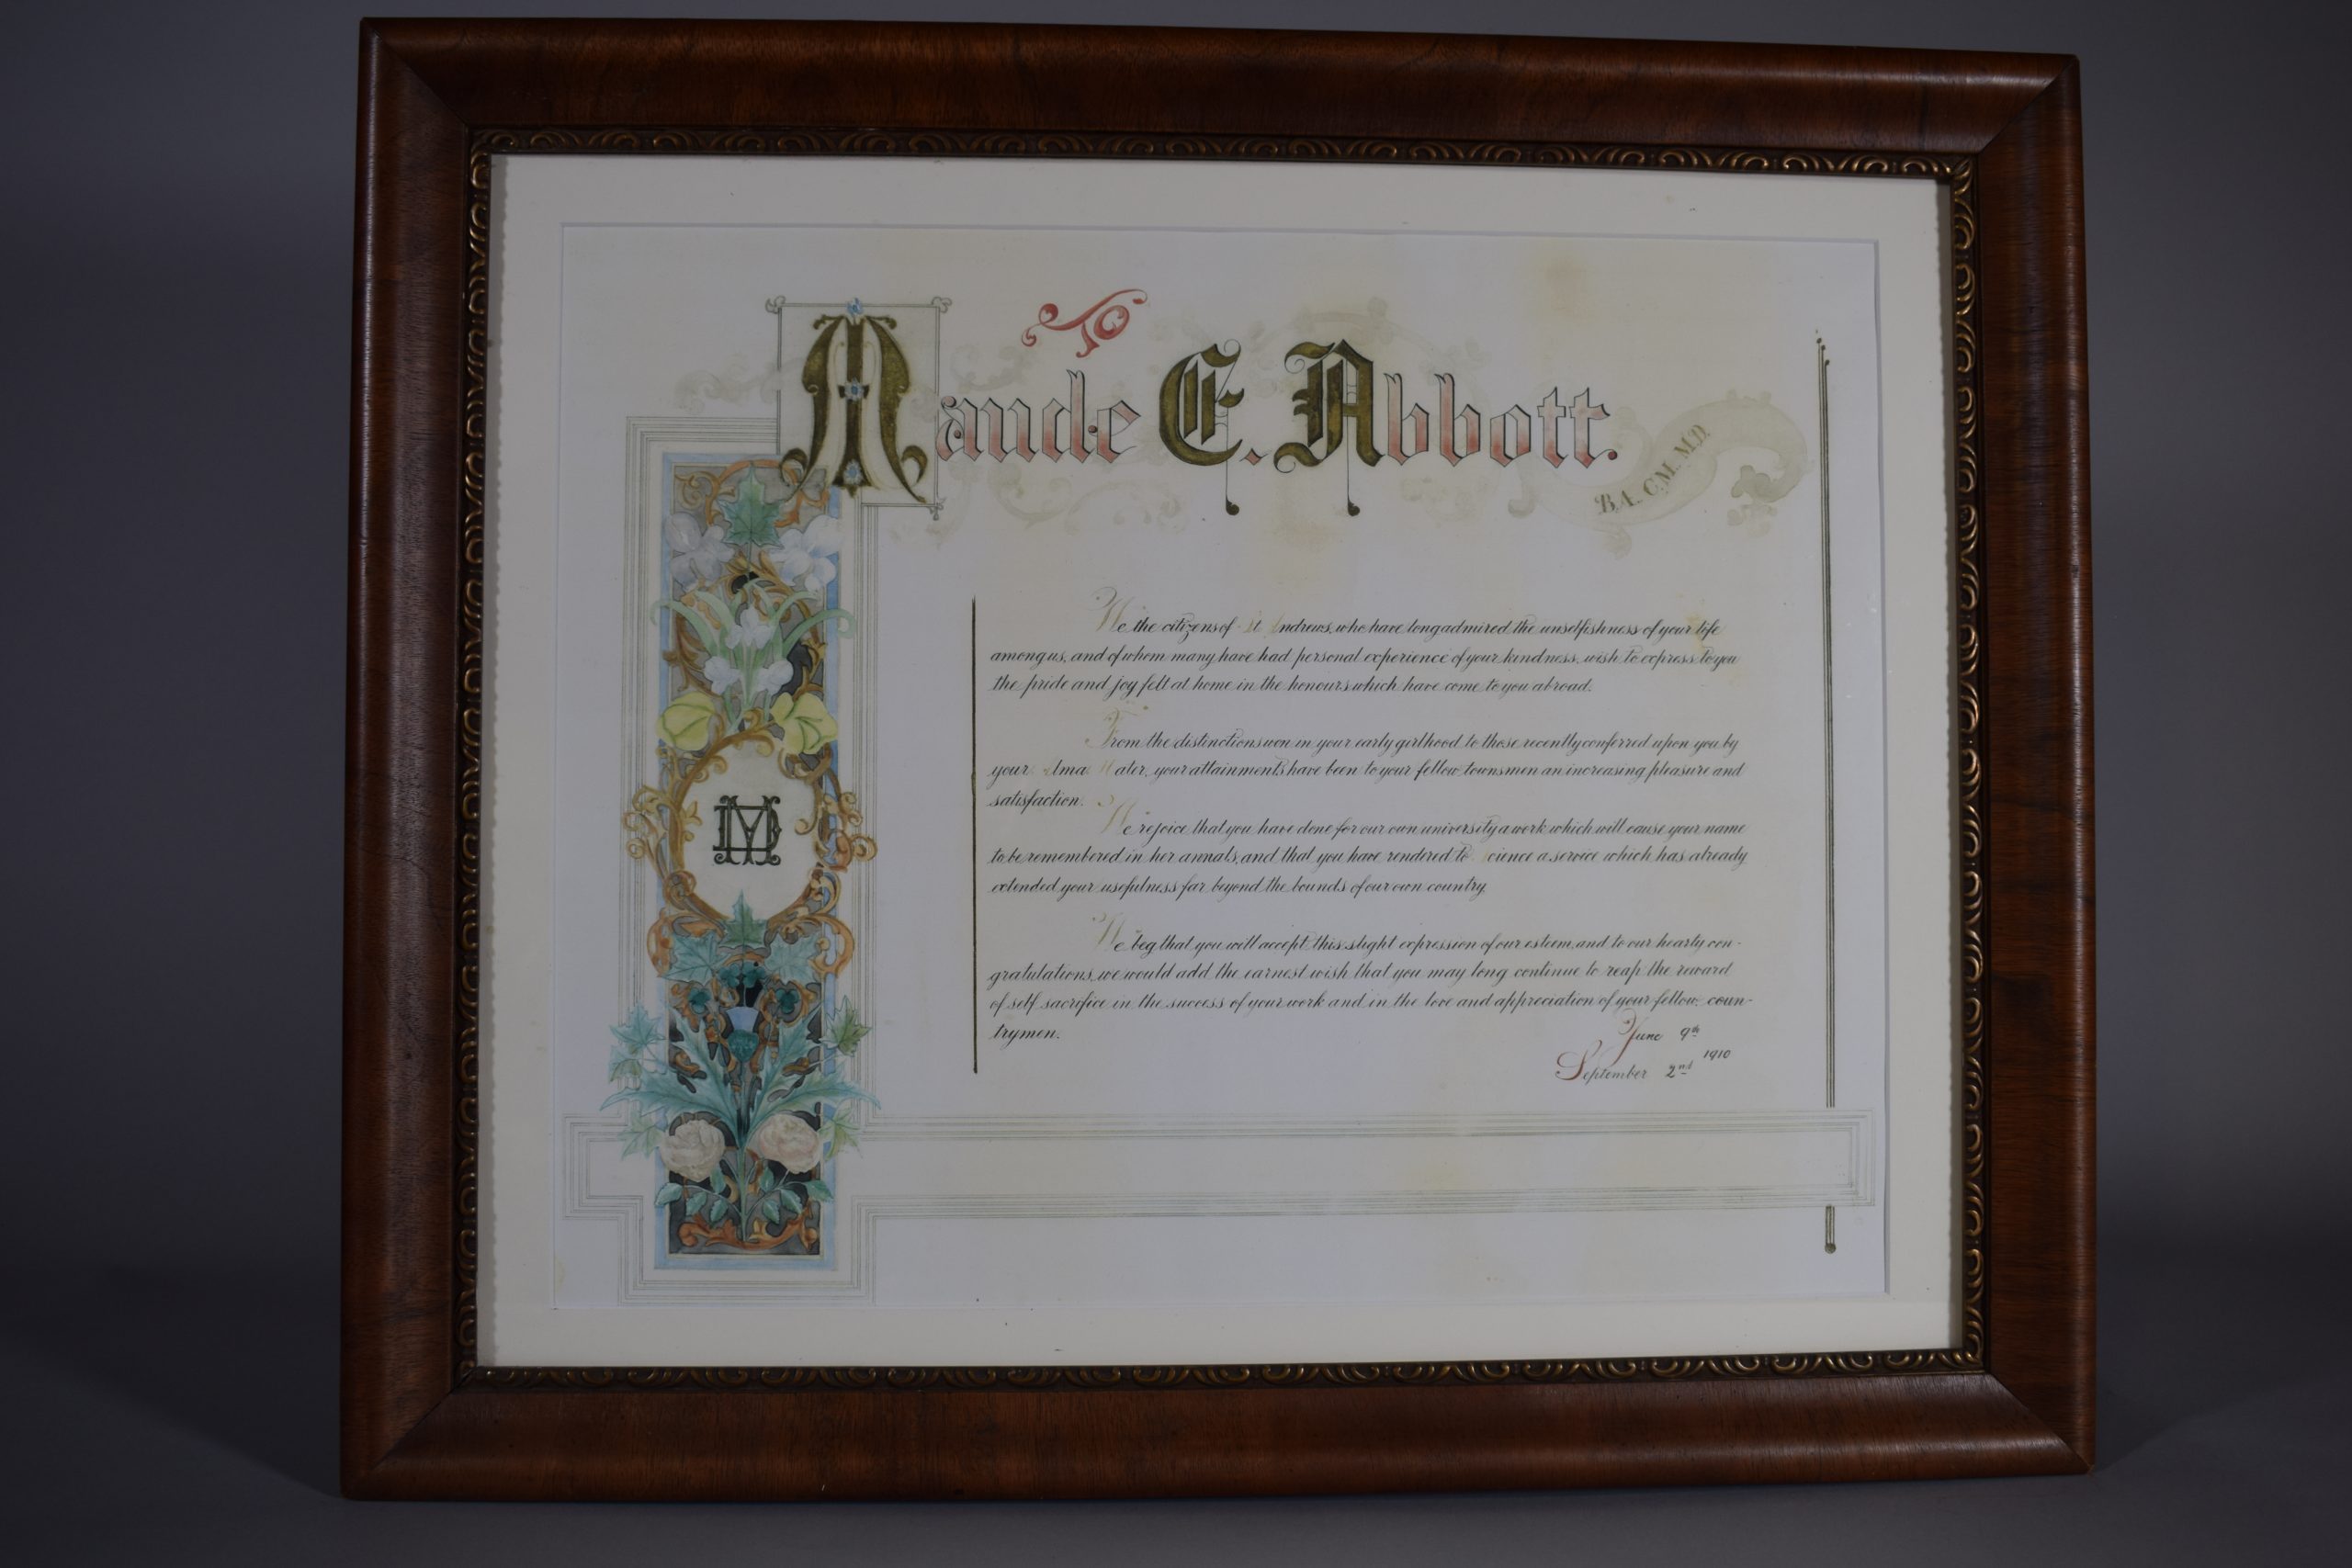 Certificat de reconnaissance en couleur. En haut, « Maude E. Abbott » dont les initiales sont en lettrines et dans une bannière à droite « B.A., C.M., M.D. ». Du côté gauche, une banderole avec des fleurs dans un encadré noir entoure un cercle doré avec les lettres « MD » superposées. 